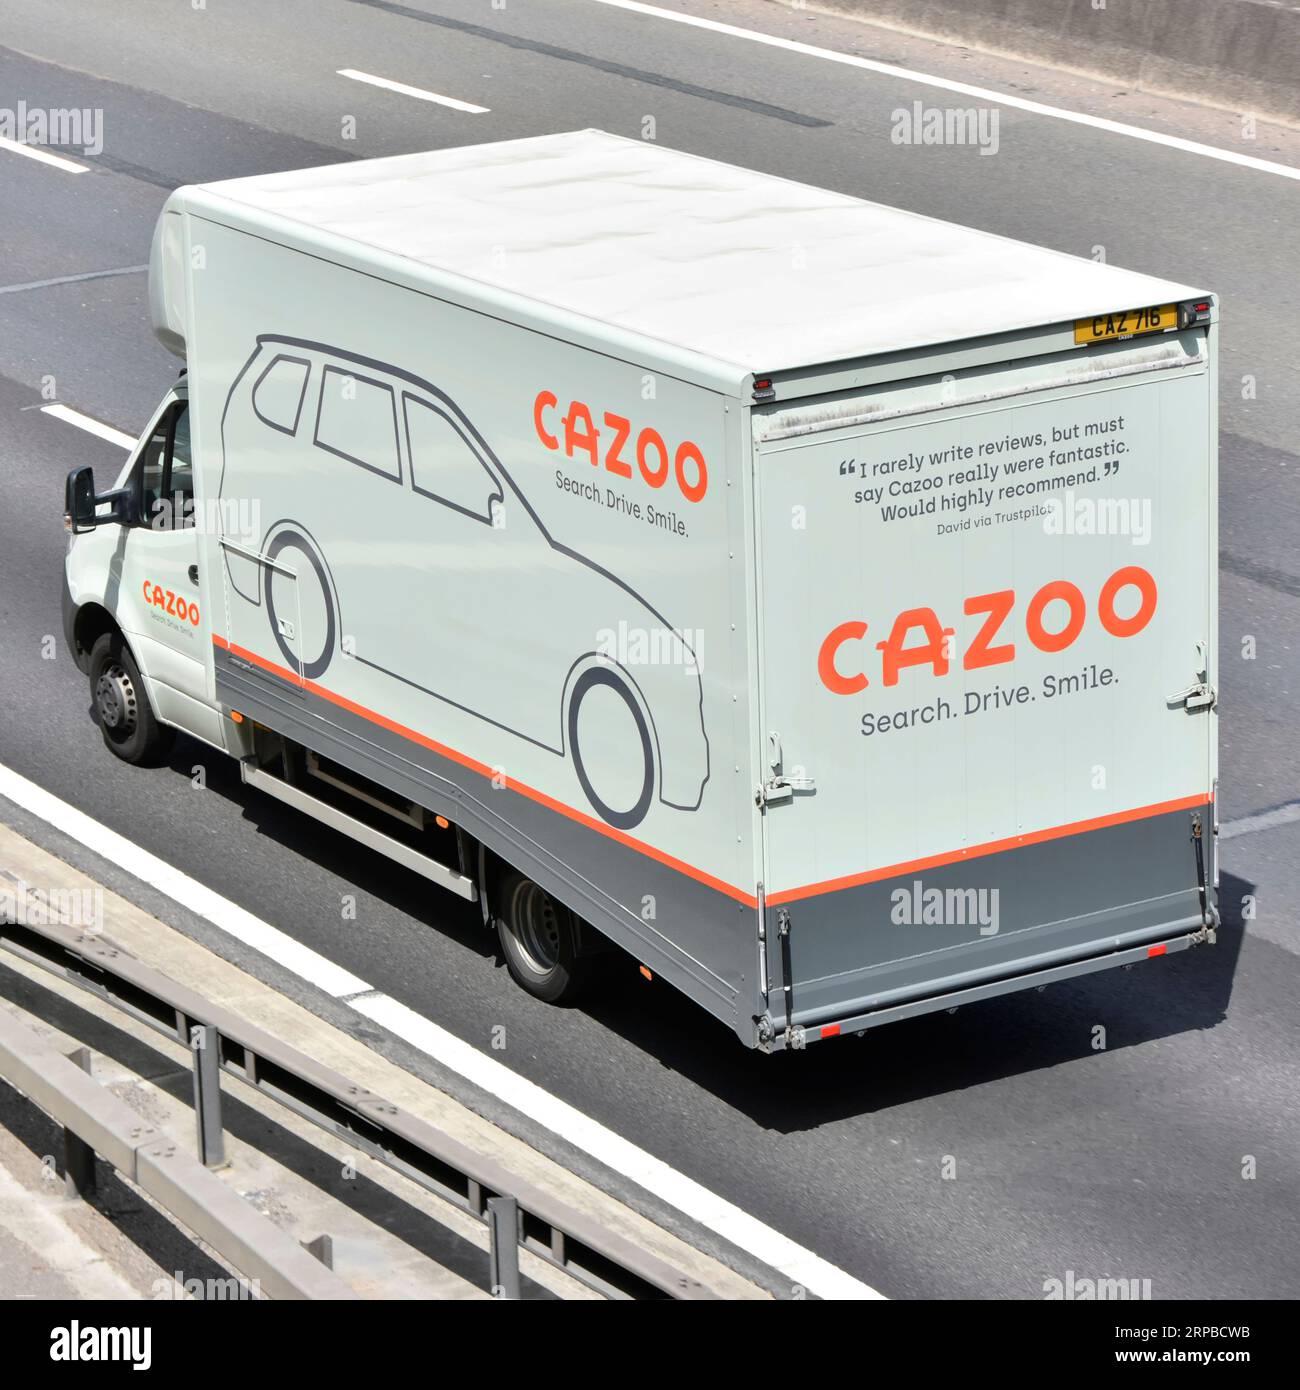 Cazoo ventes et livraison de voitures utilisant la publicité de transporteur de véhicules commerciaux unique sur le côté et l'arrière conduite sur la route d'autoroute M25 en Angleterre Royaume-Uni Banque D'Images